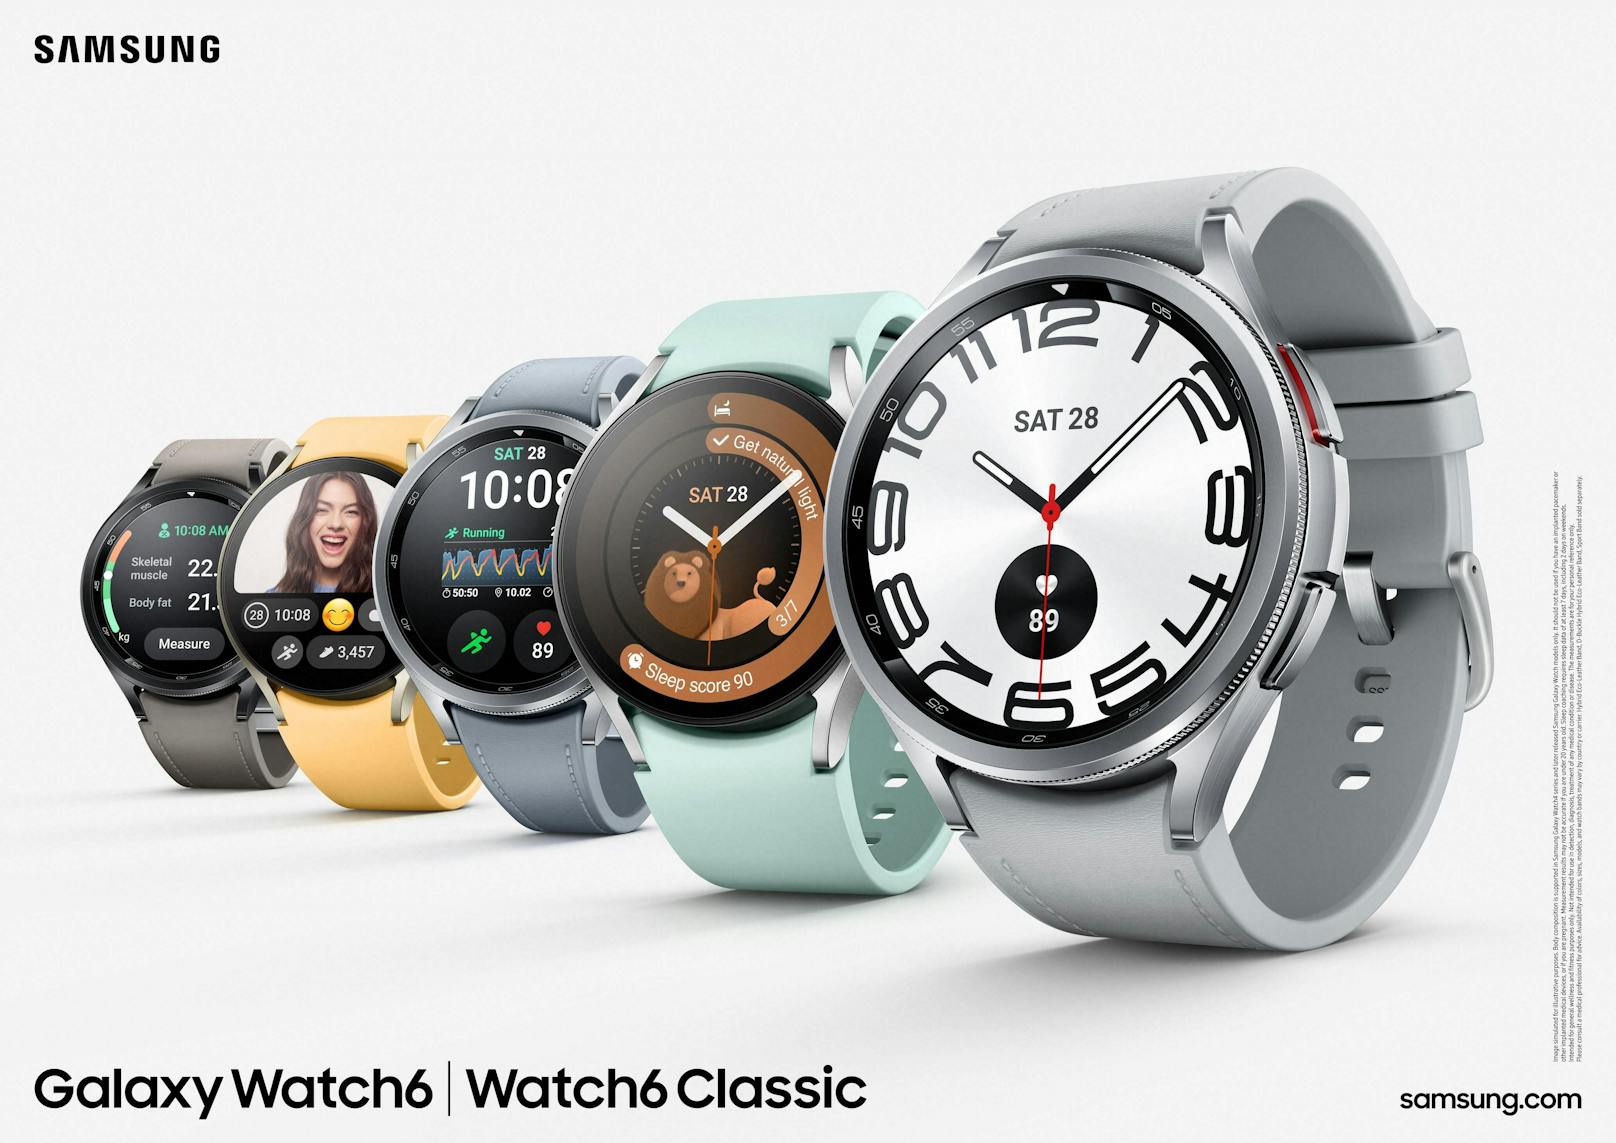 Schöner, schlauer und schneller sollen Samsungs neue Smartwatches sein, die das Technologieunternehmen am Mittwoch in Südkorea vorgestellt hat und die ...